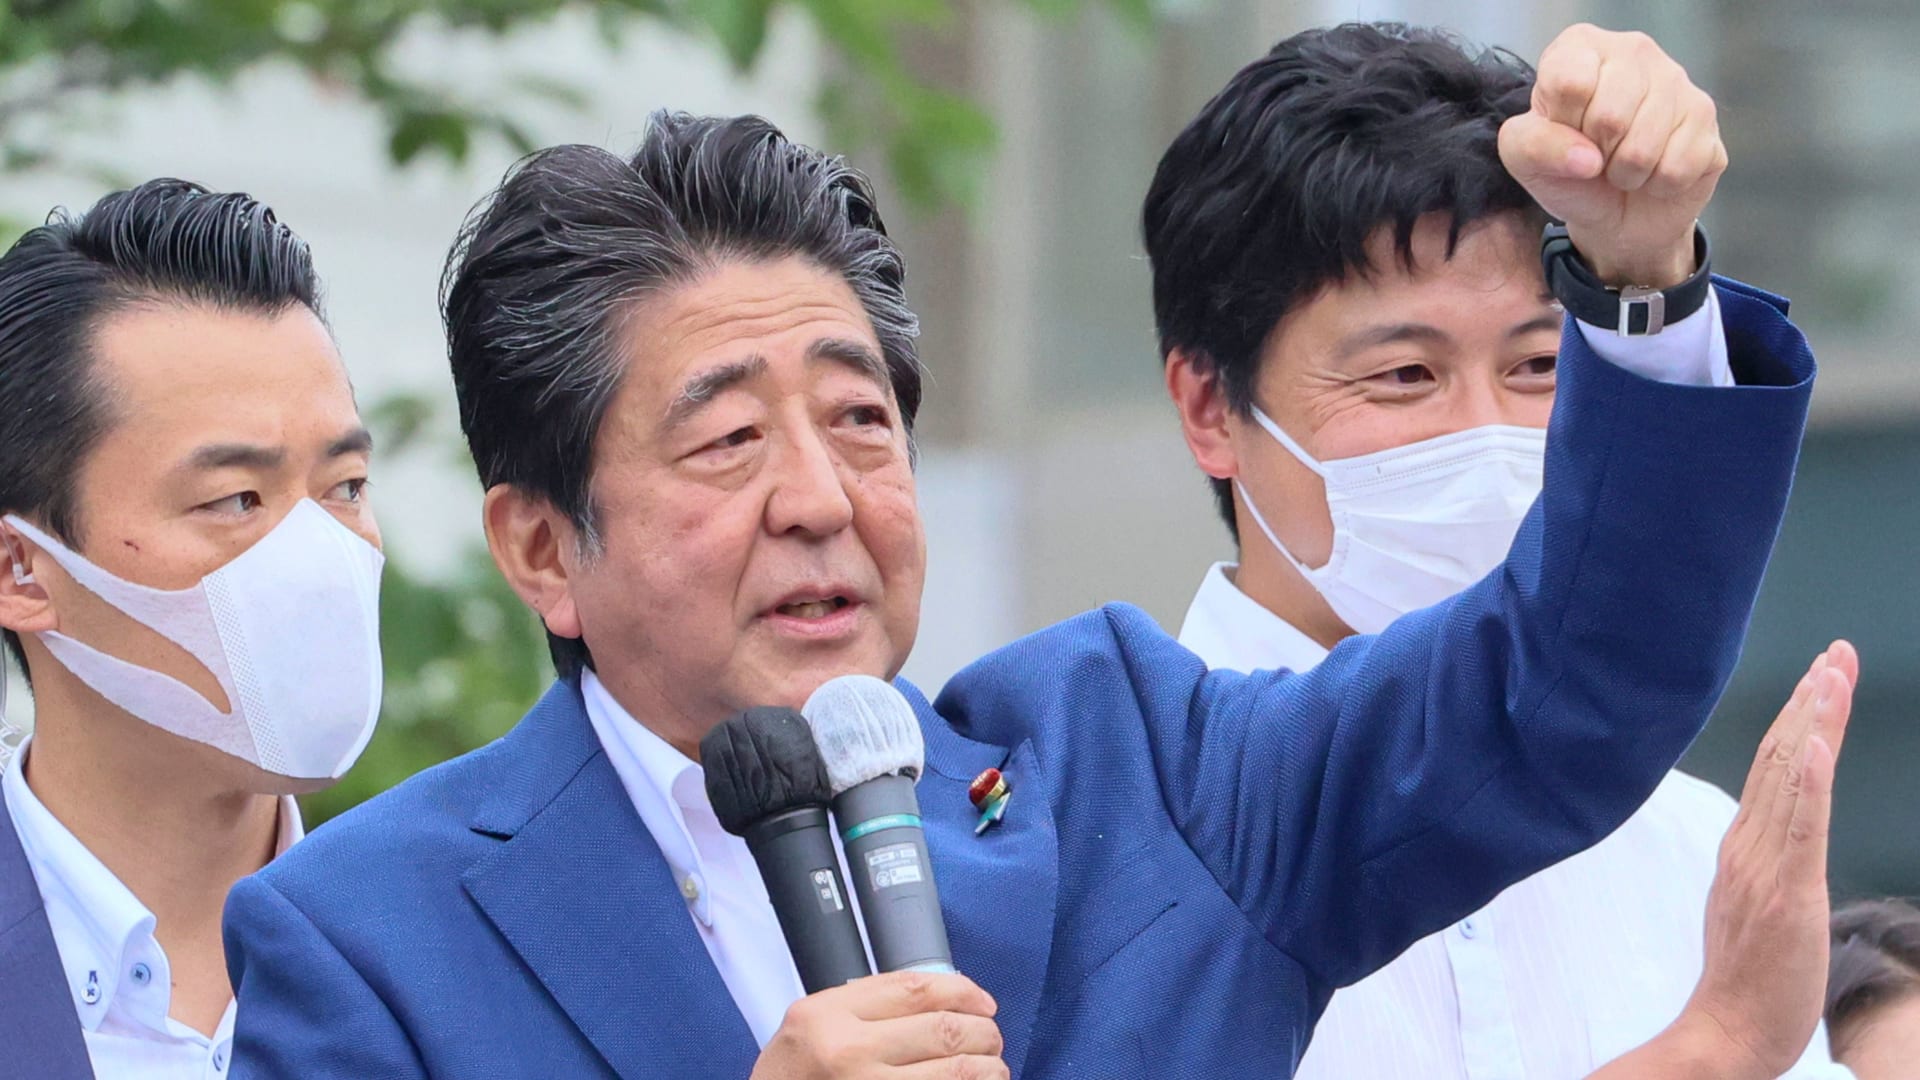 فيديو يُظهر لحظة سقوط شينزو آبي أثناء إلقاء خطاب بعد إطلاق النار